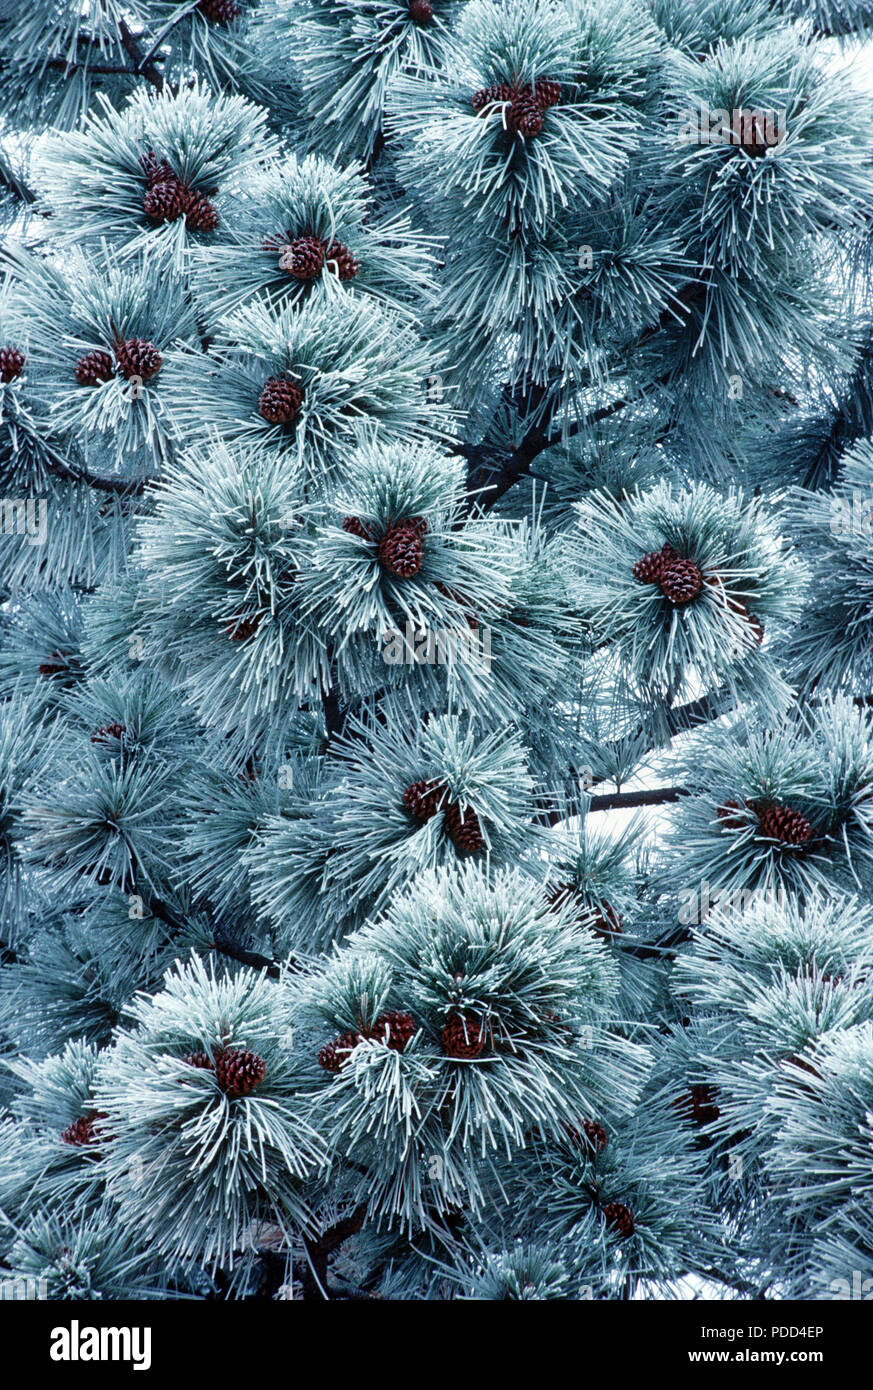 Frosted agujas y corteza de pino ponderosa, Pinus ponderosa, oeste de Montana Foto de stock